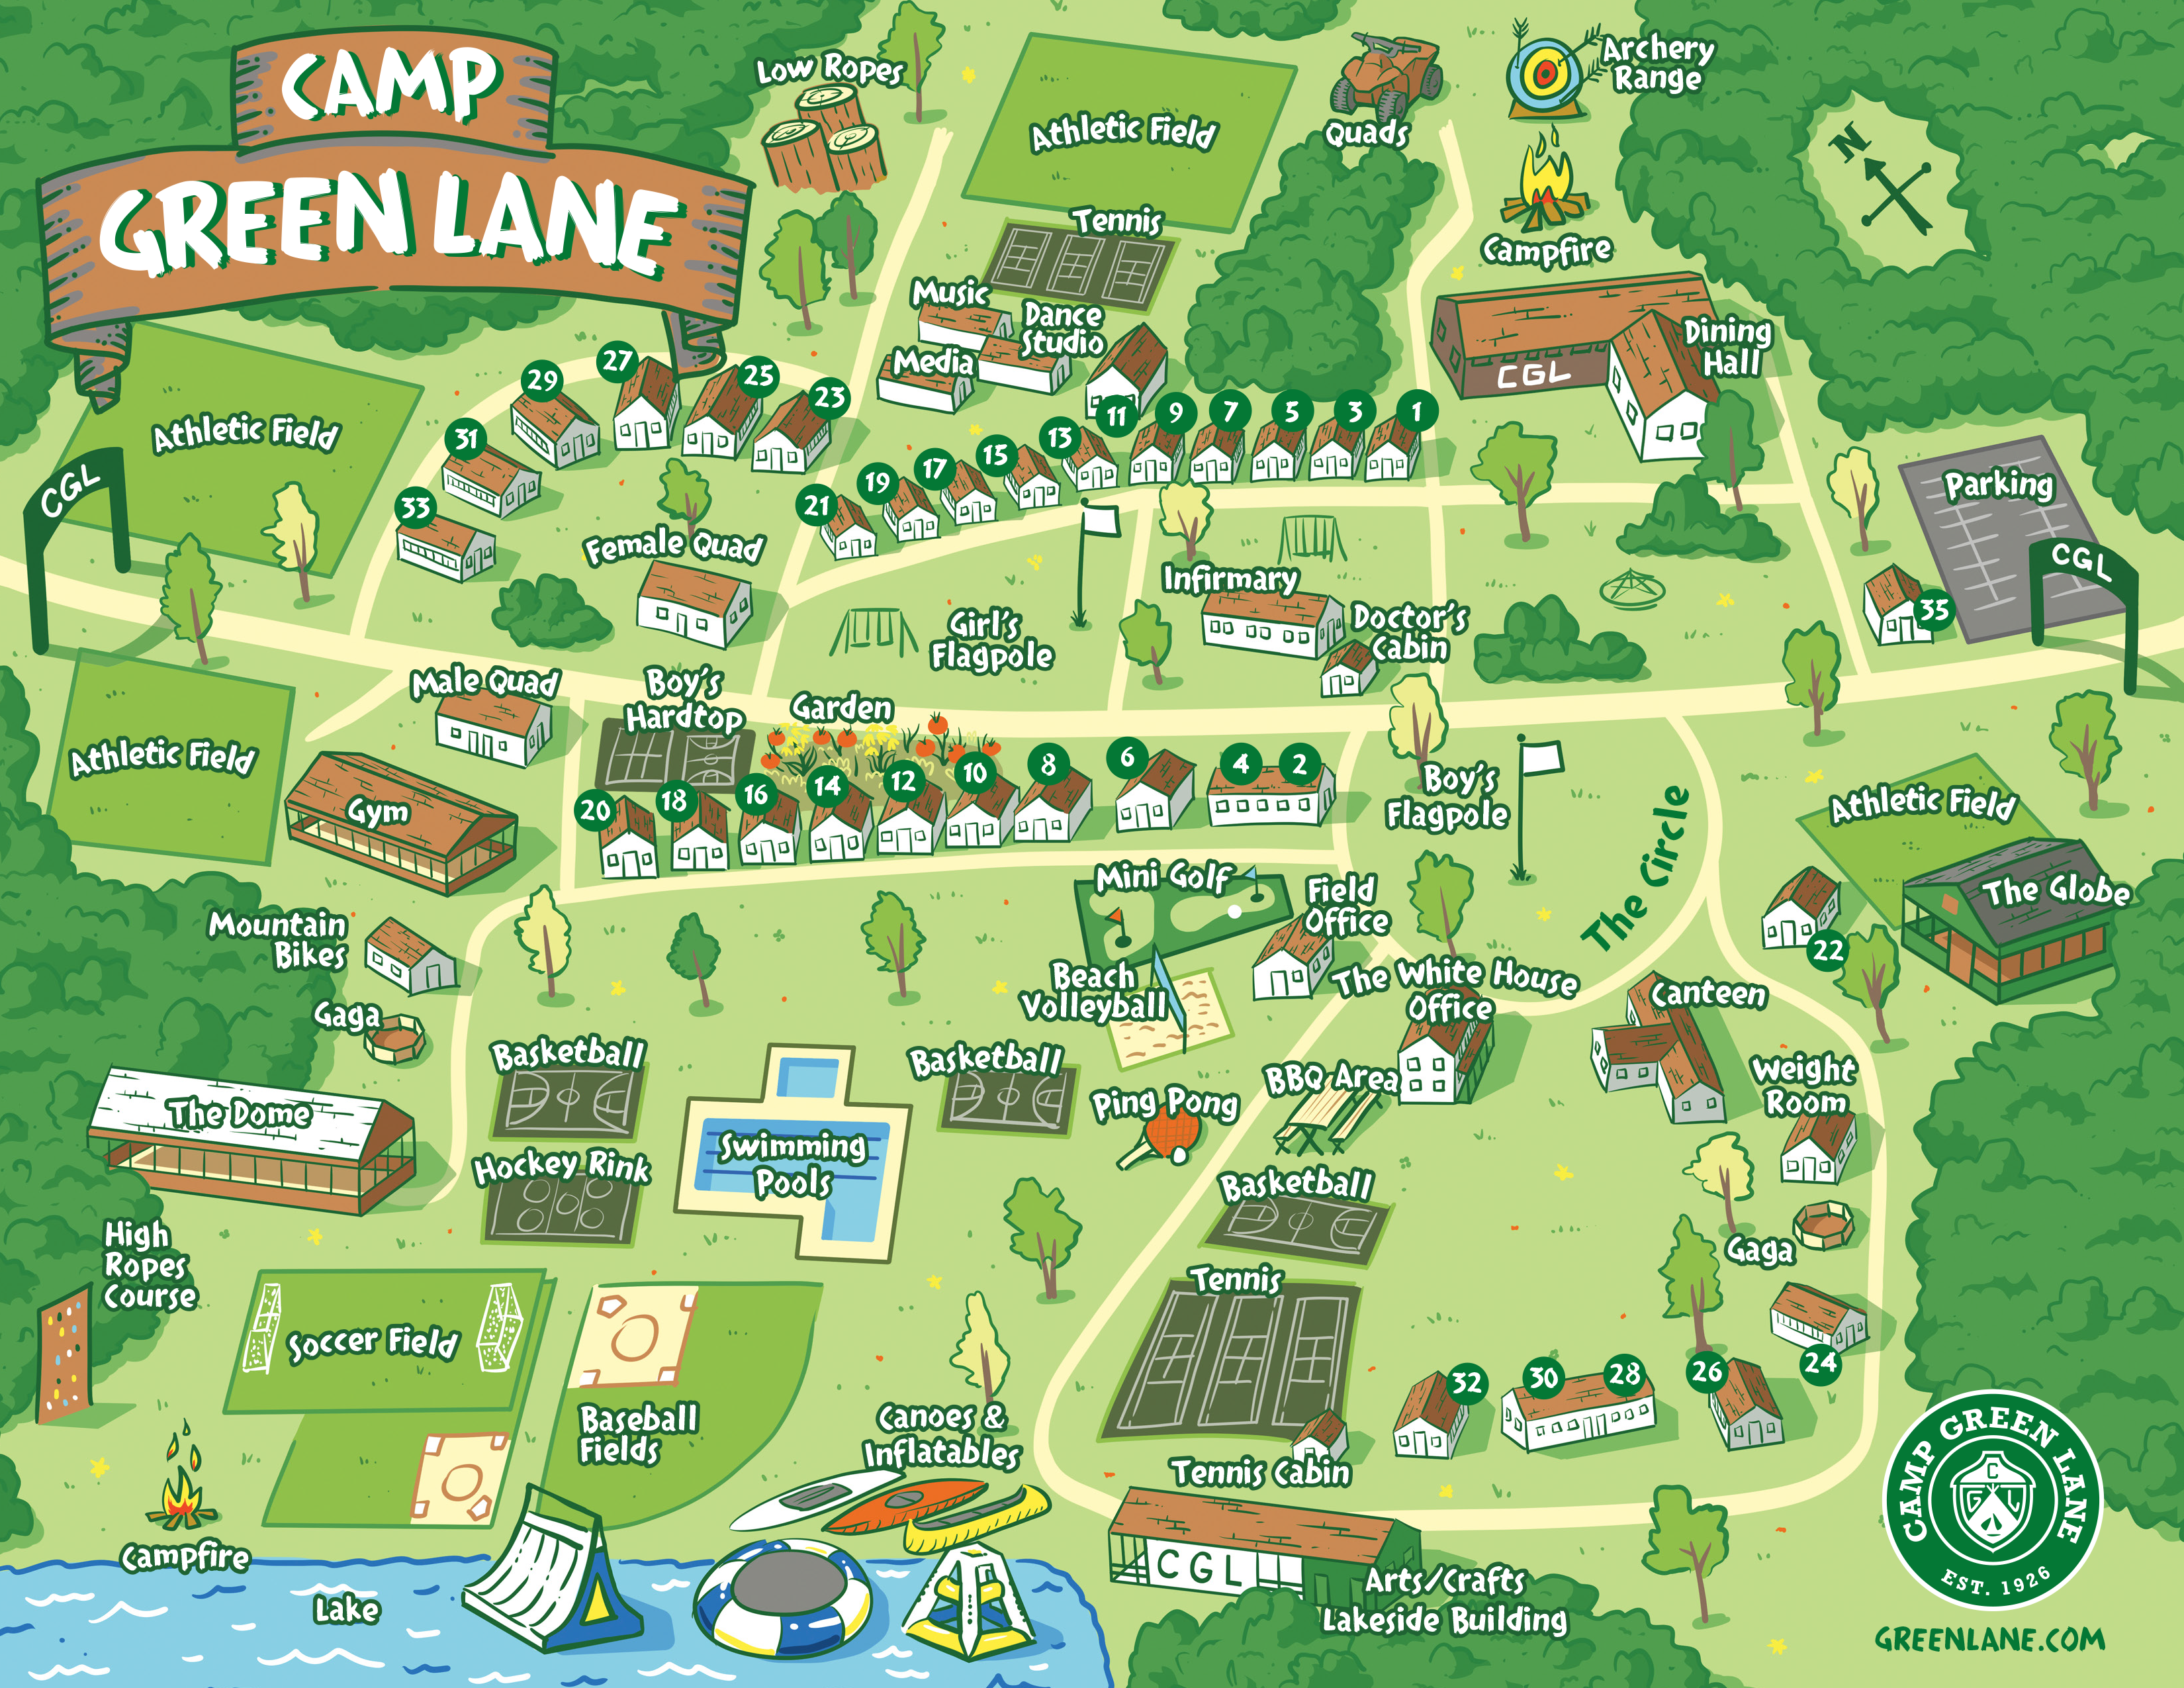 Camp Green Lake Map